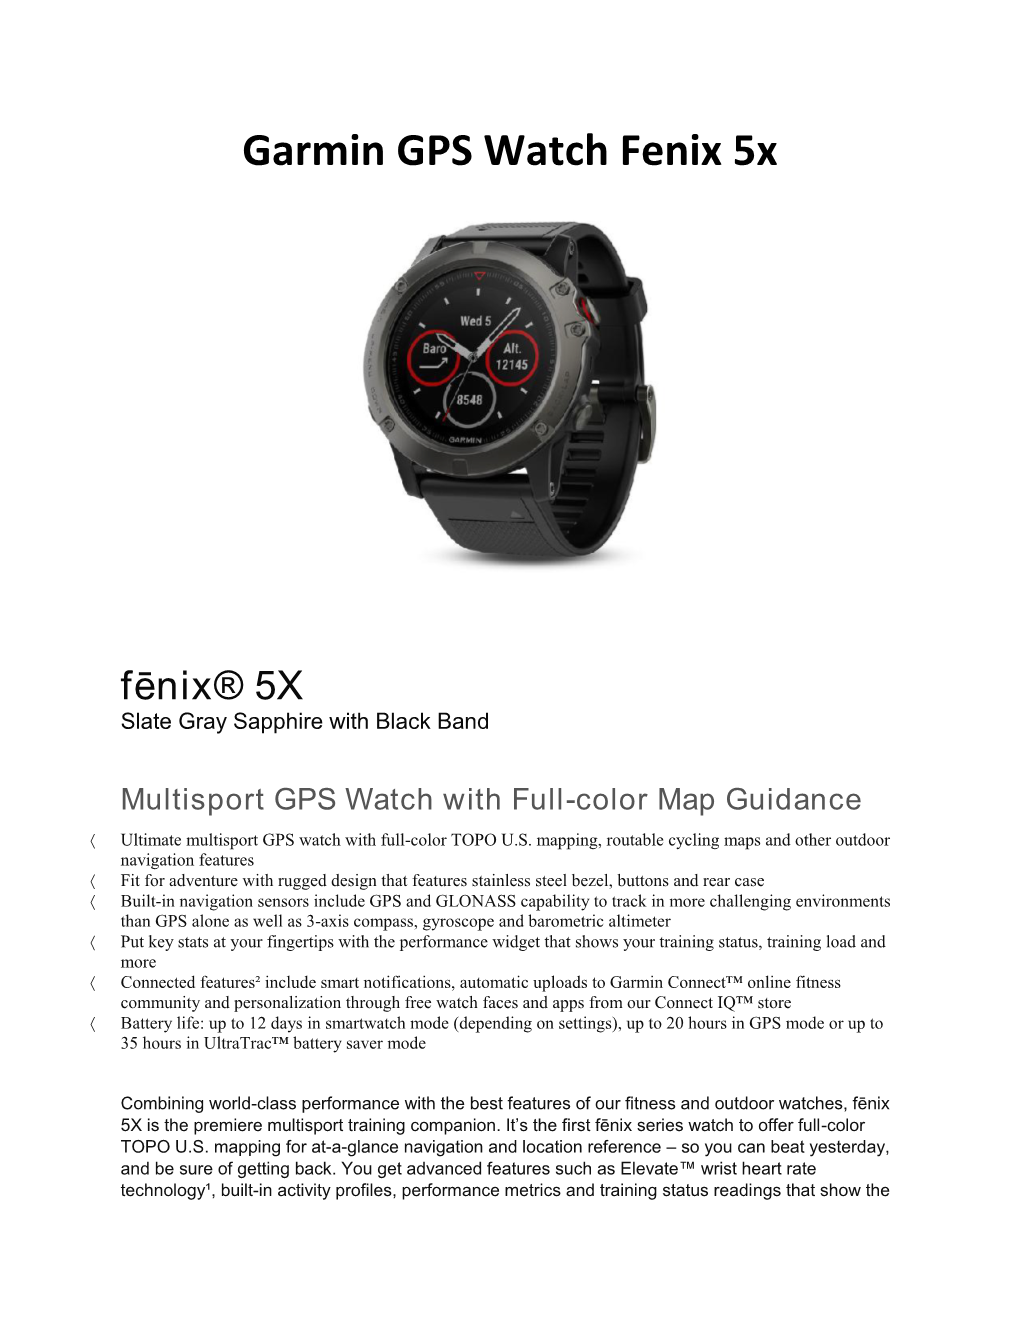 Garmin GPS Watch Fenix 5X Fēnix® 5X